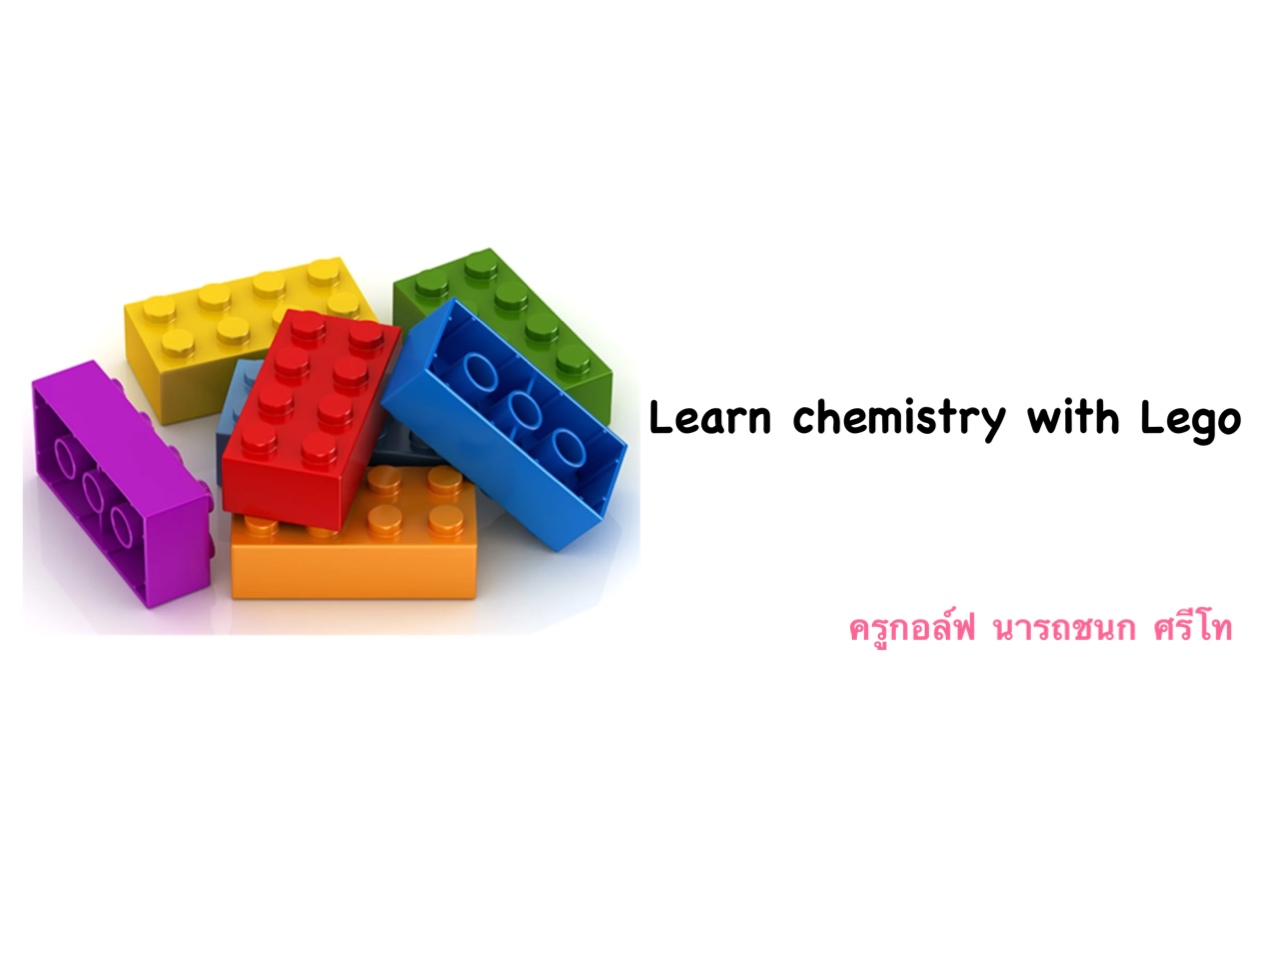 ภาพประกอบไอเดีย เรียนวิทยาศาสตร์ -เคมีด้วยตัวต่อเลโก้